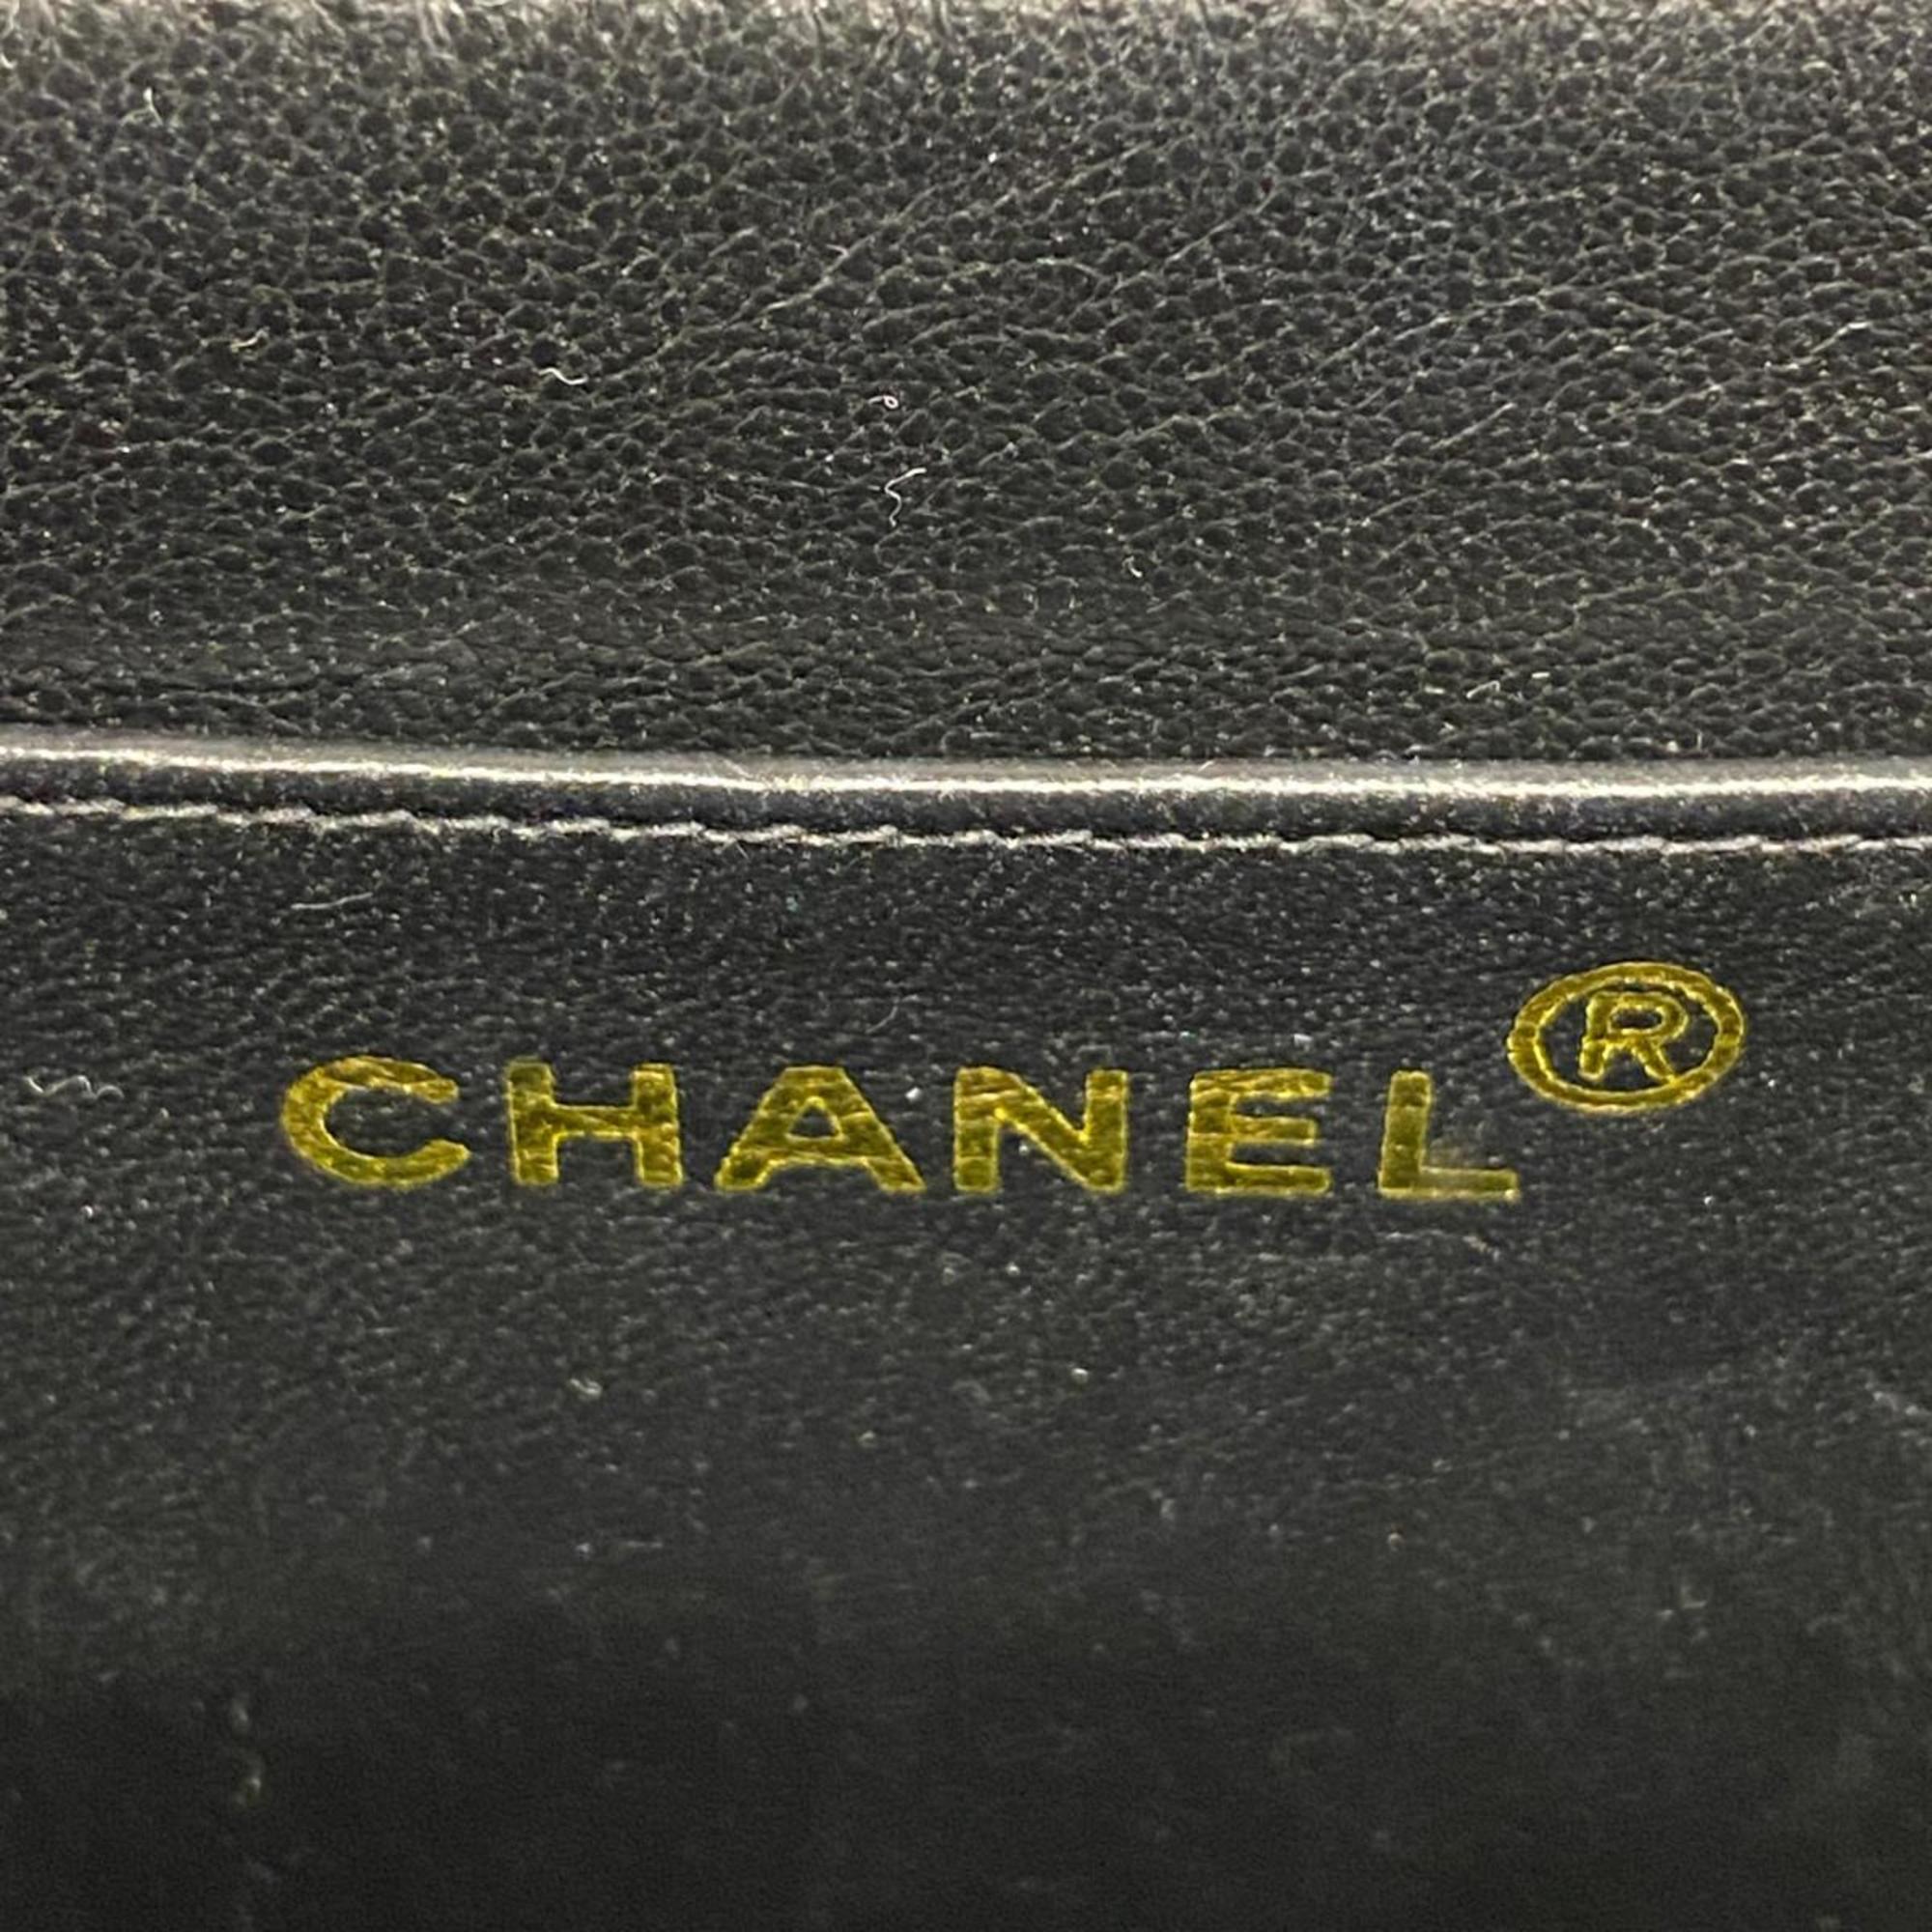 シャネル(Chanel) シャネル ショルダーバッグ Wチェーン キャビアスキン ブラック   レディース